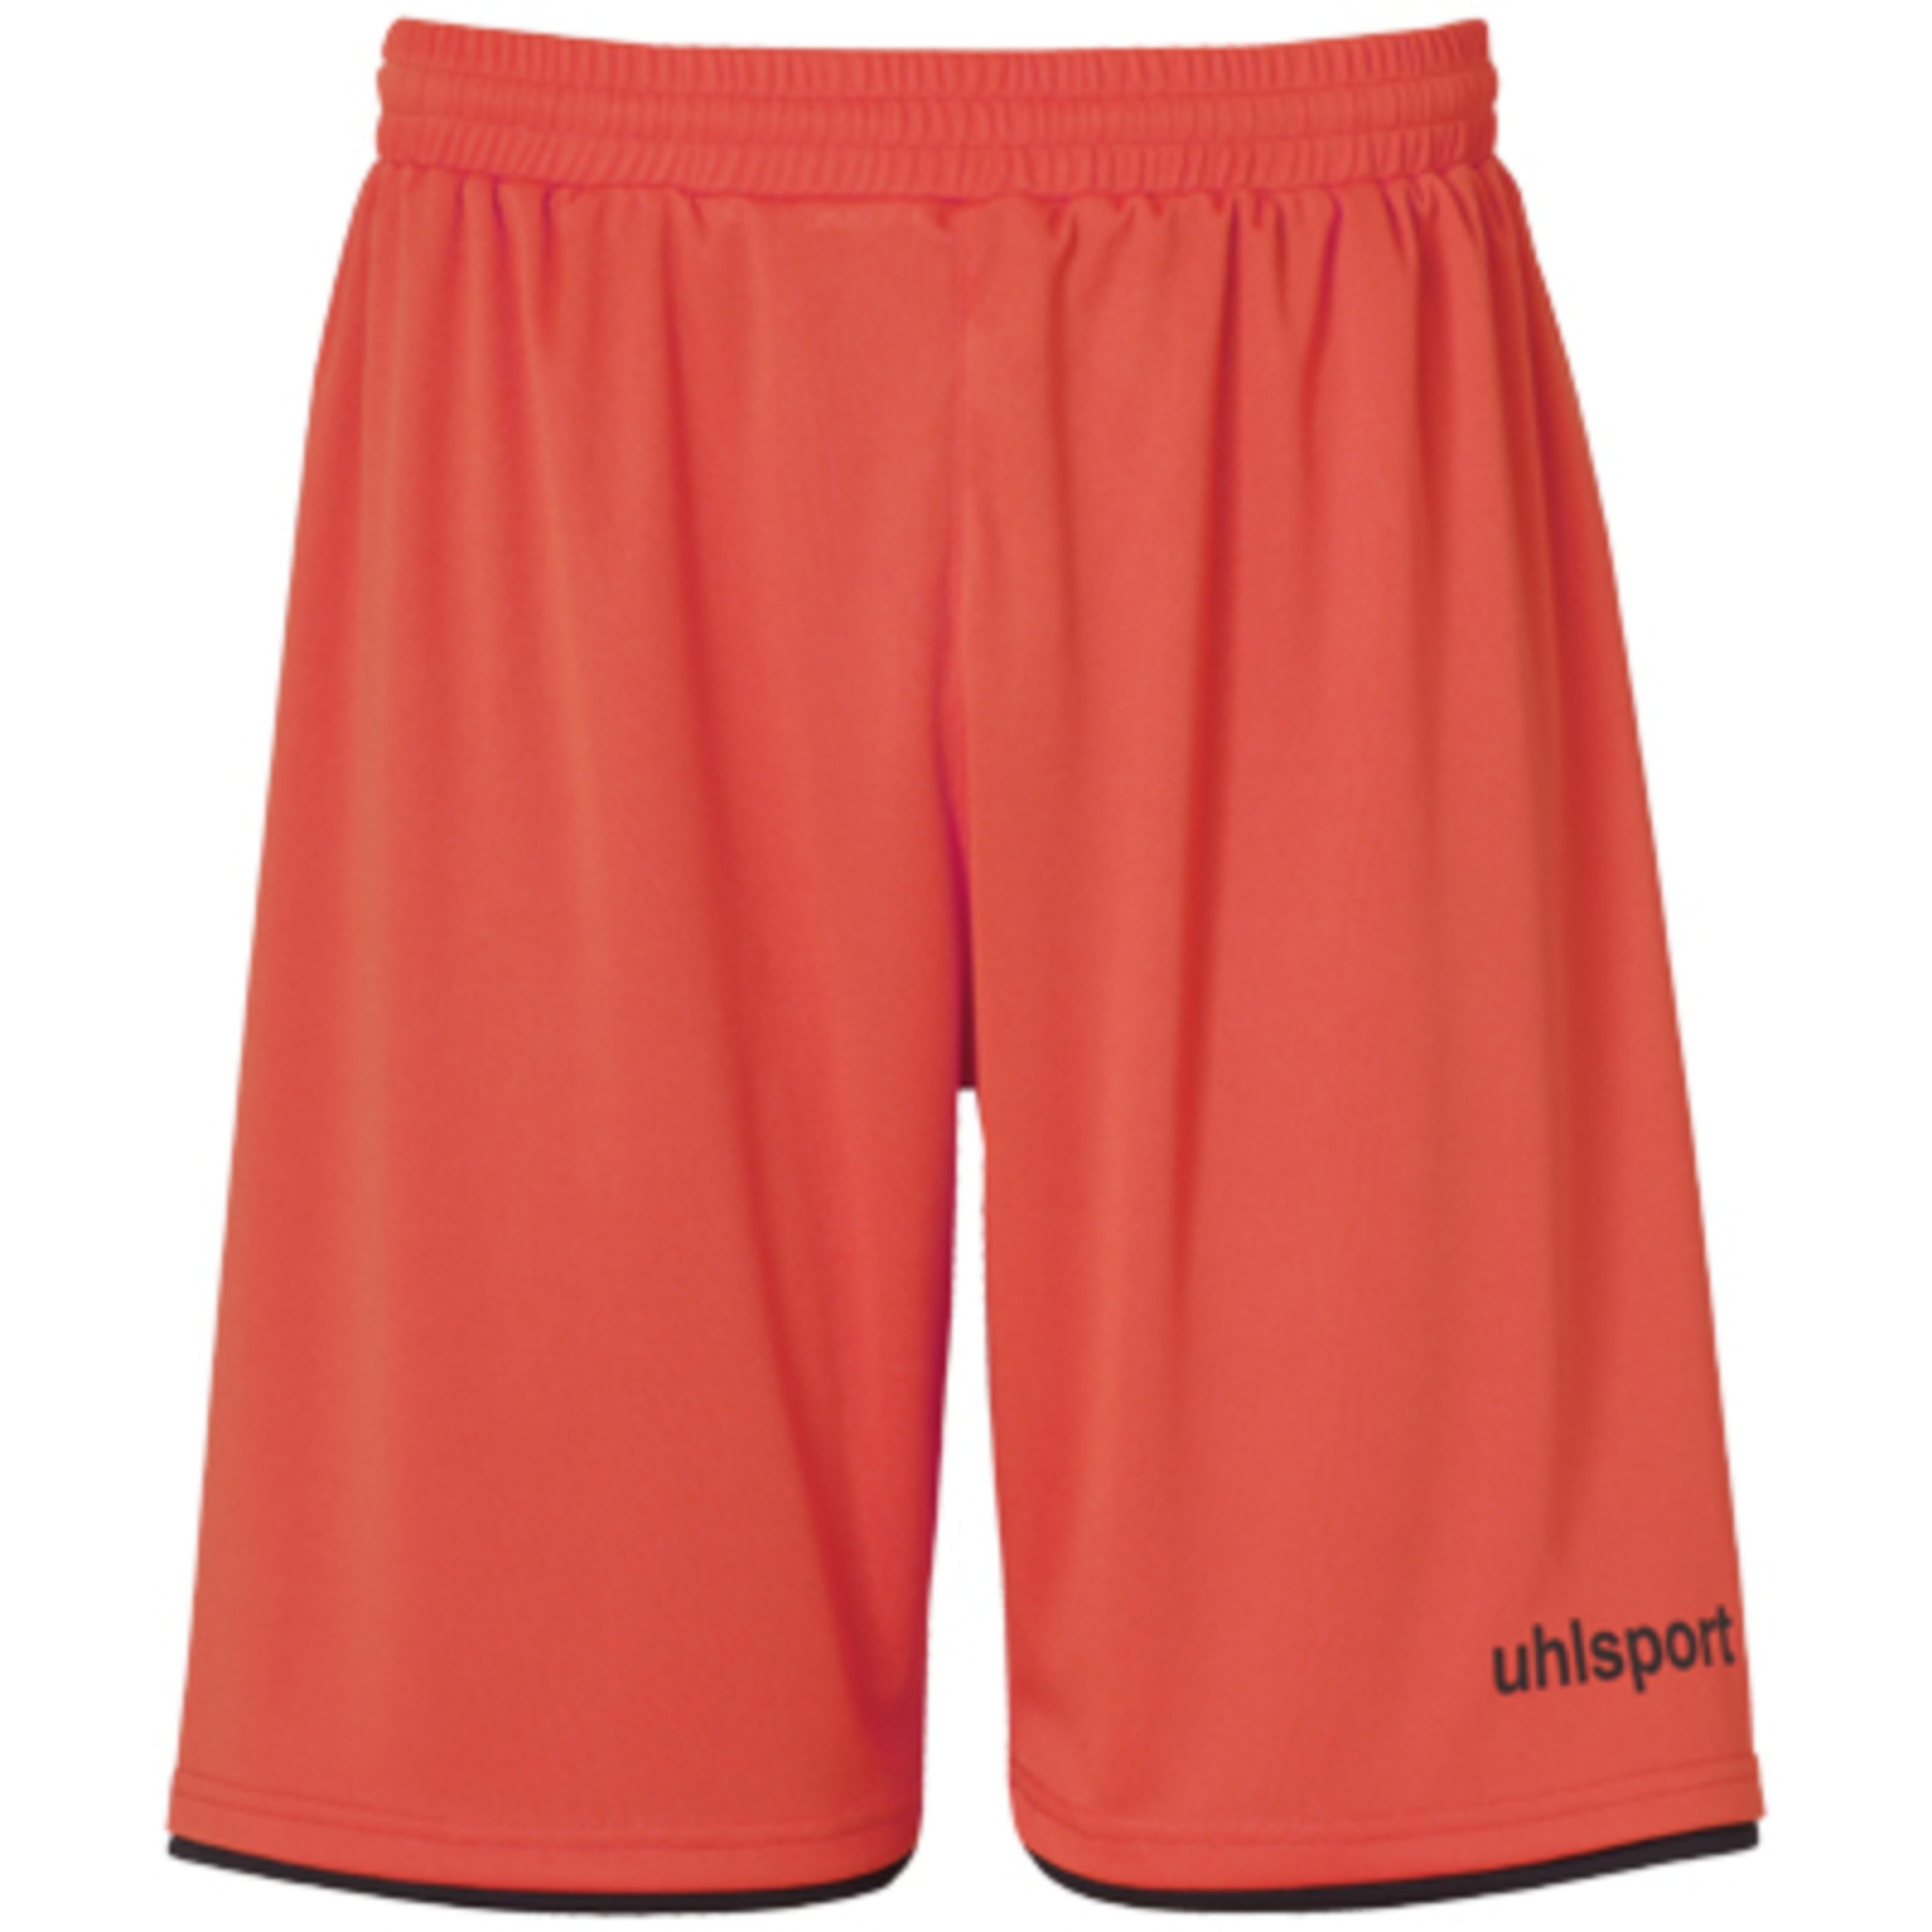 Club Shorts Dynamic Orange/negro Uhlsport - negro-naranja - 